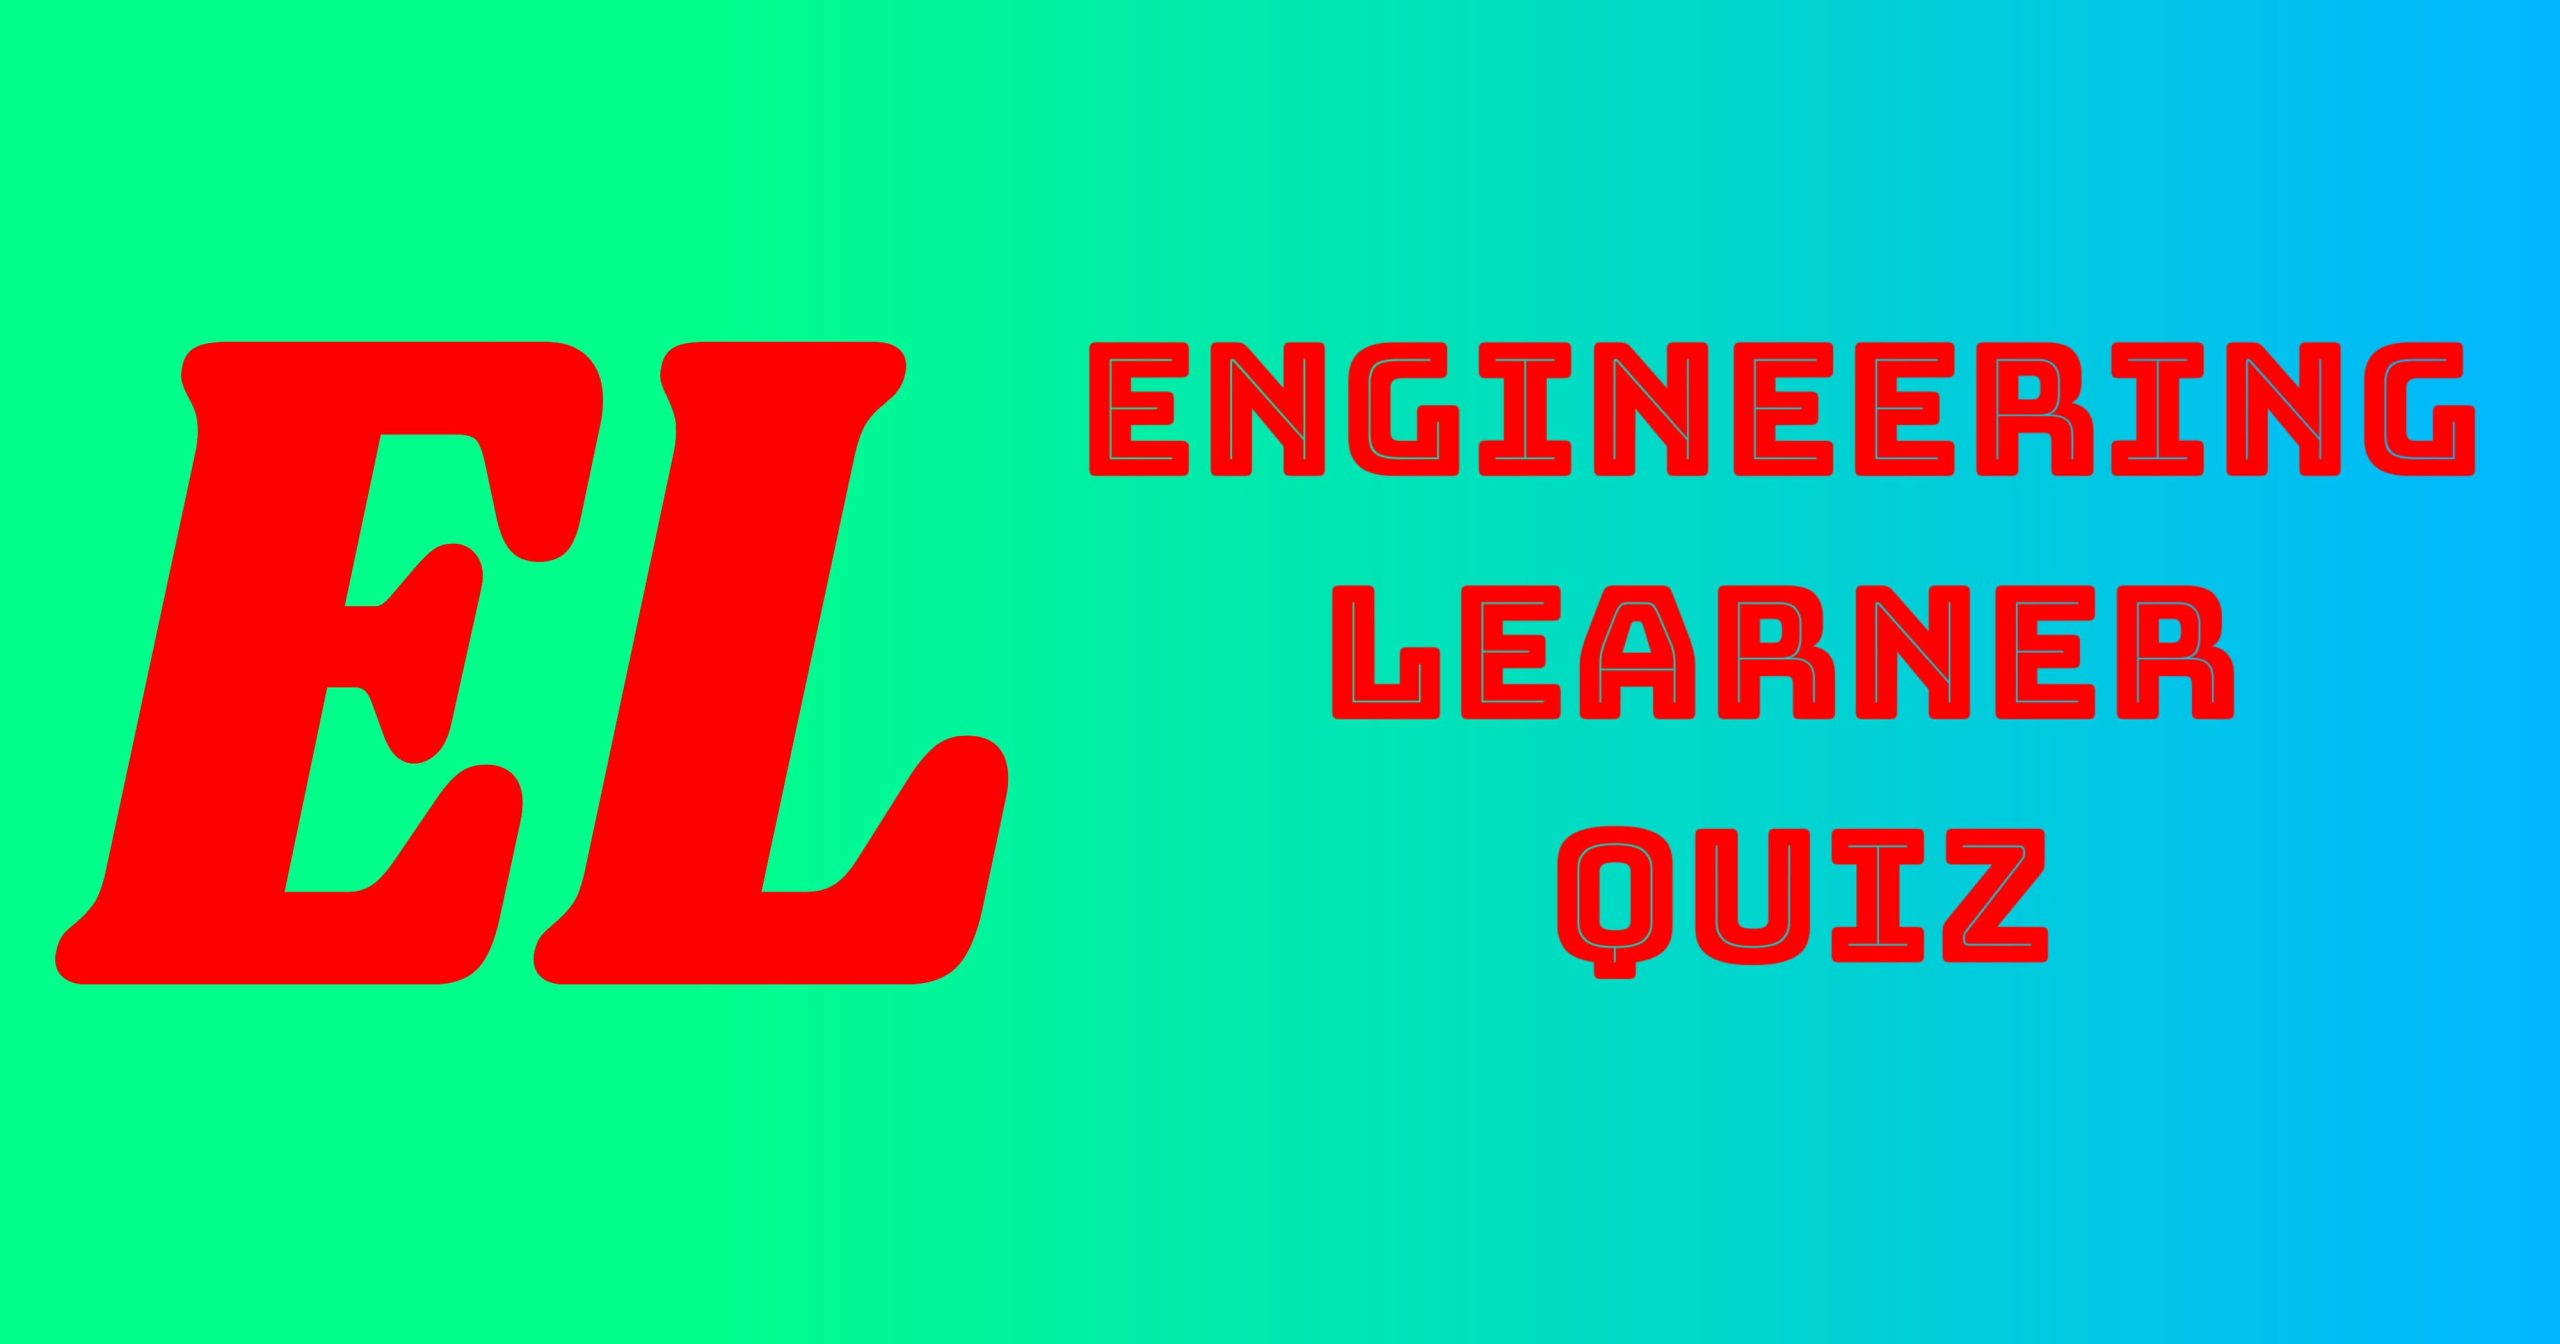 Engineering Learner Quiz